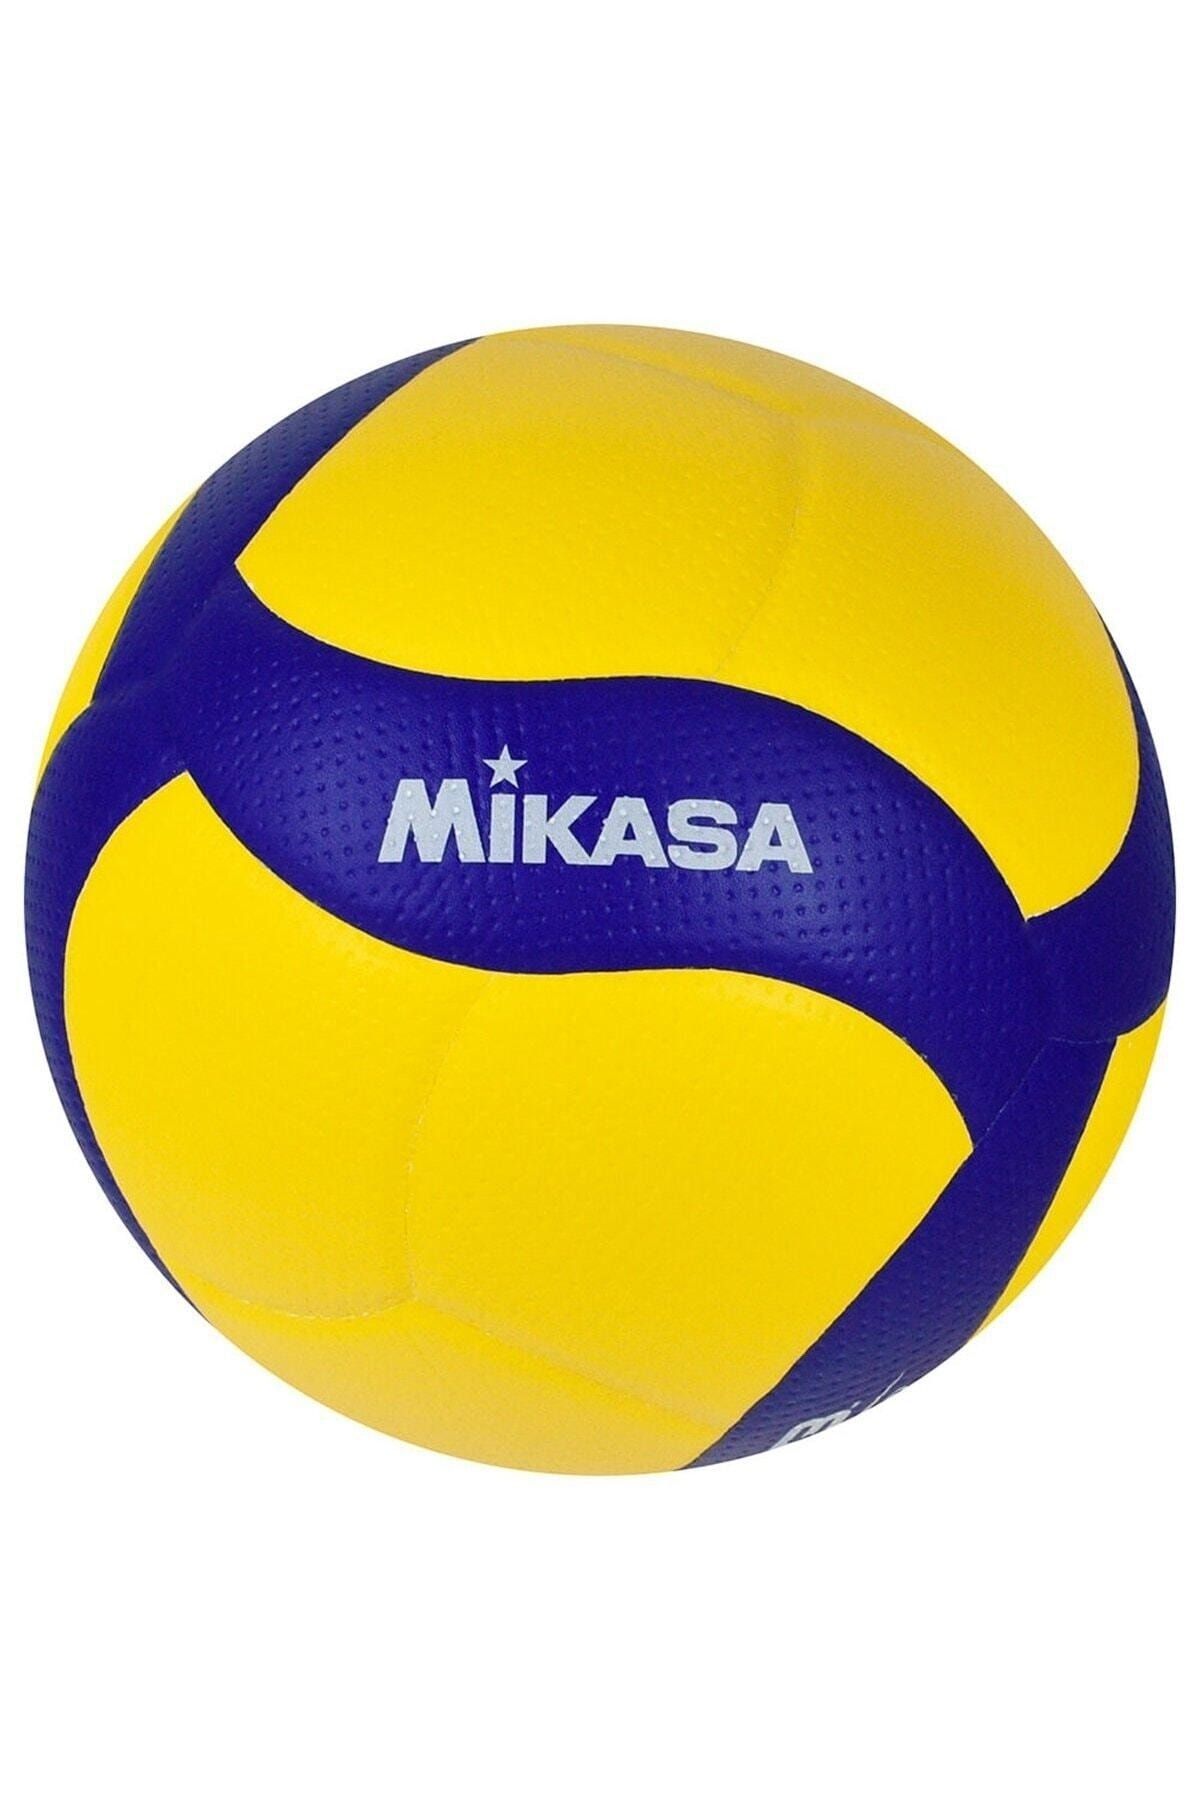 MIKASA V200w Fıvb Onaylı Voleybol Maç Topu